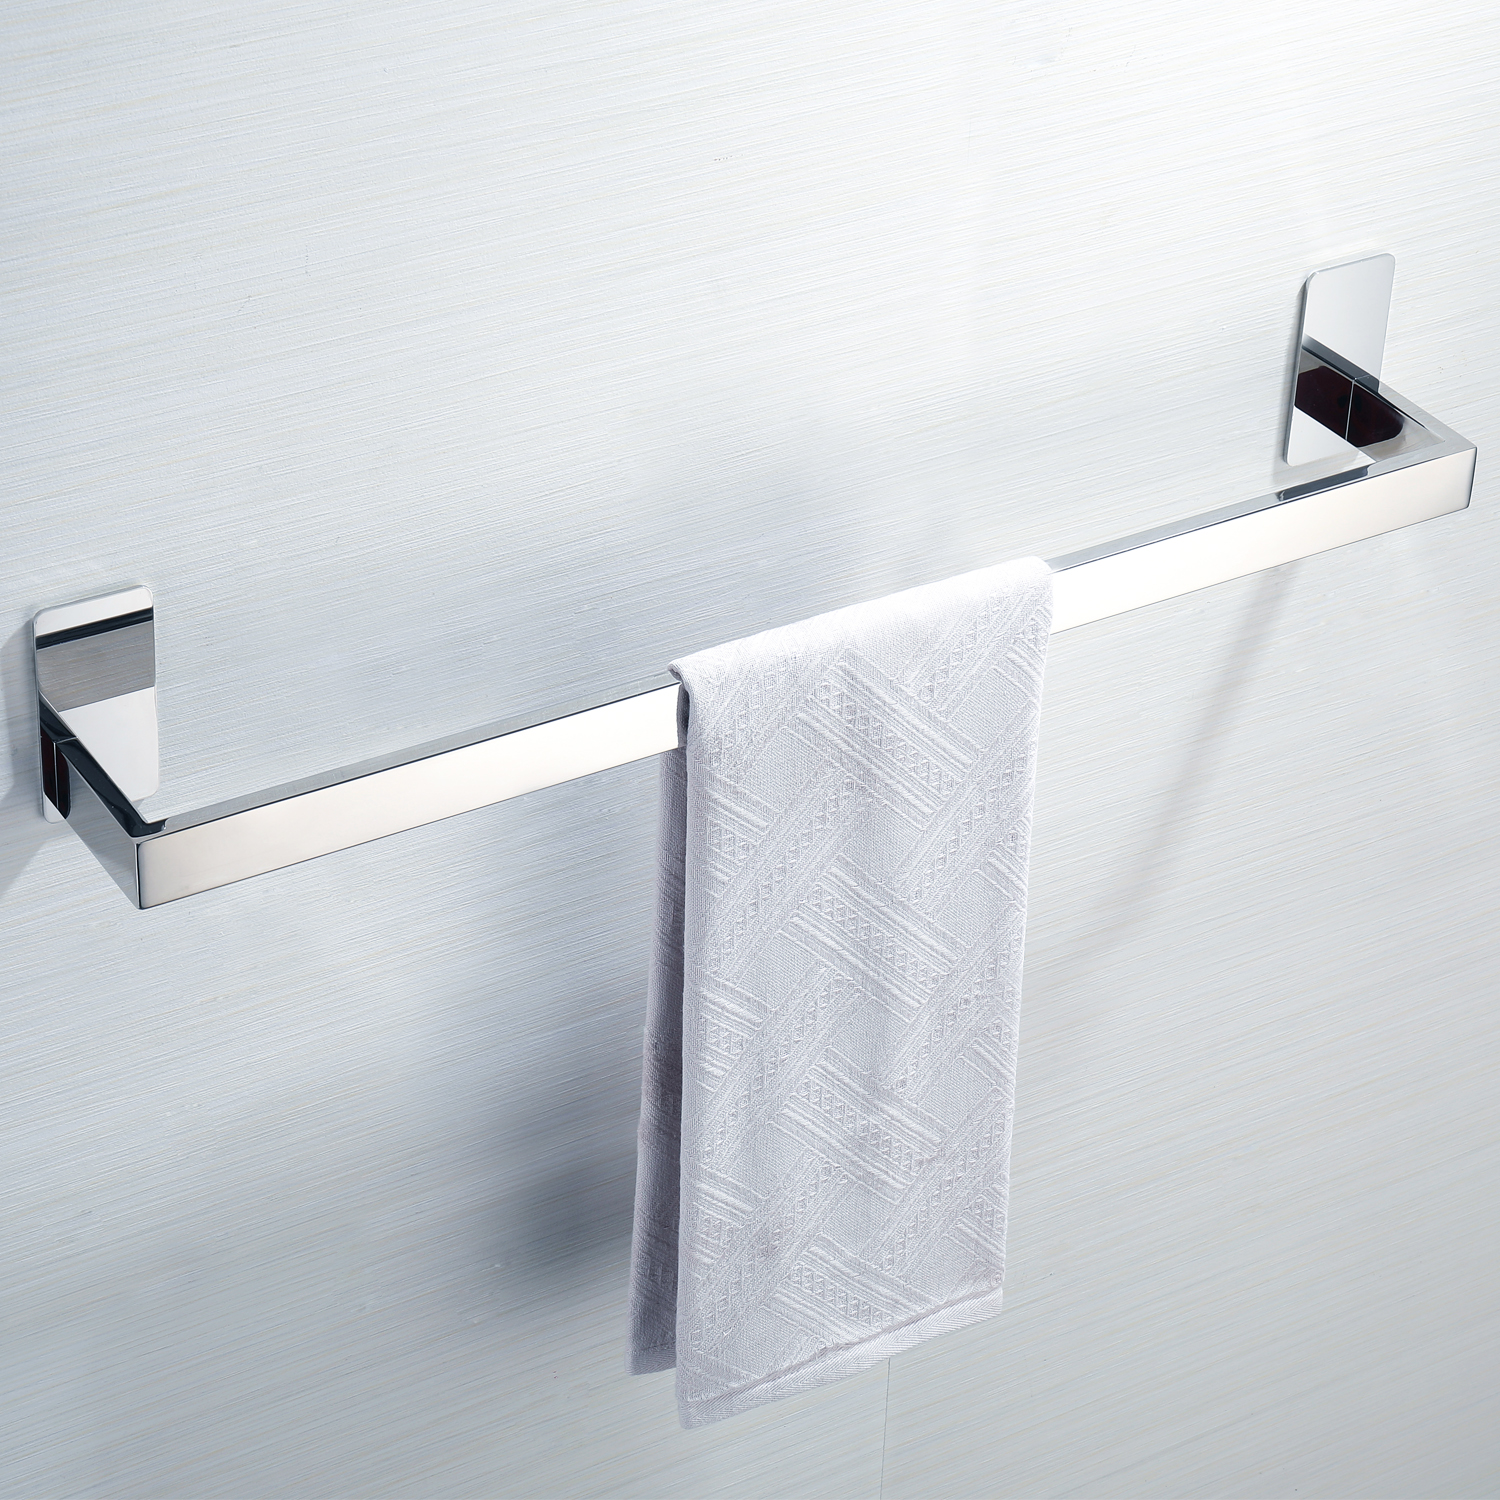 Handtuchstange Handtuchhalter Toilettenpapierhalter Duschablage Bad Wandhandtuch